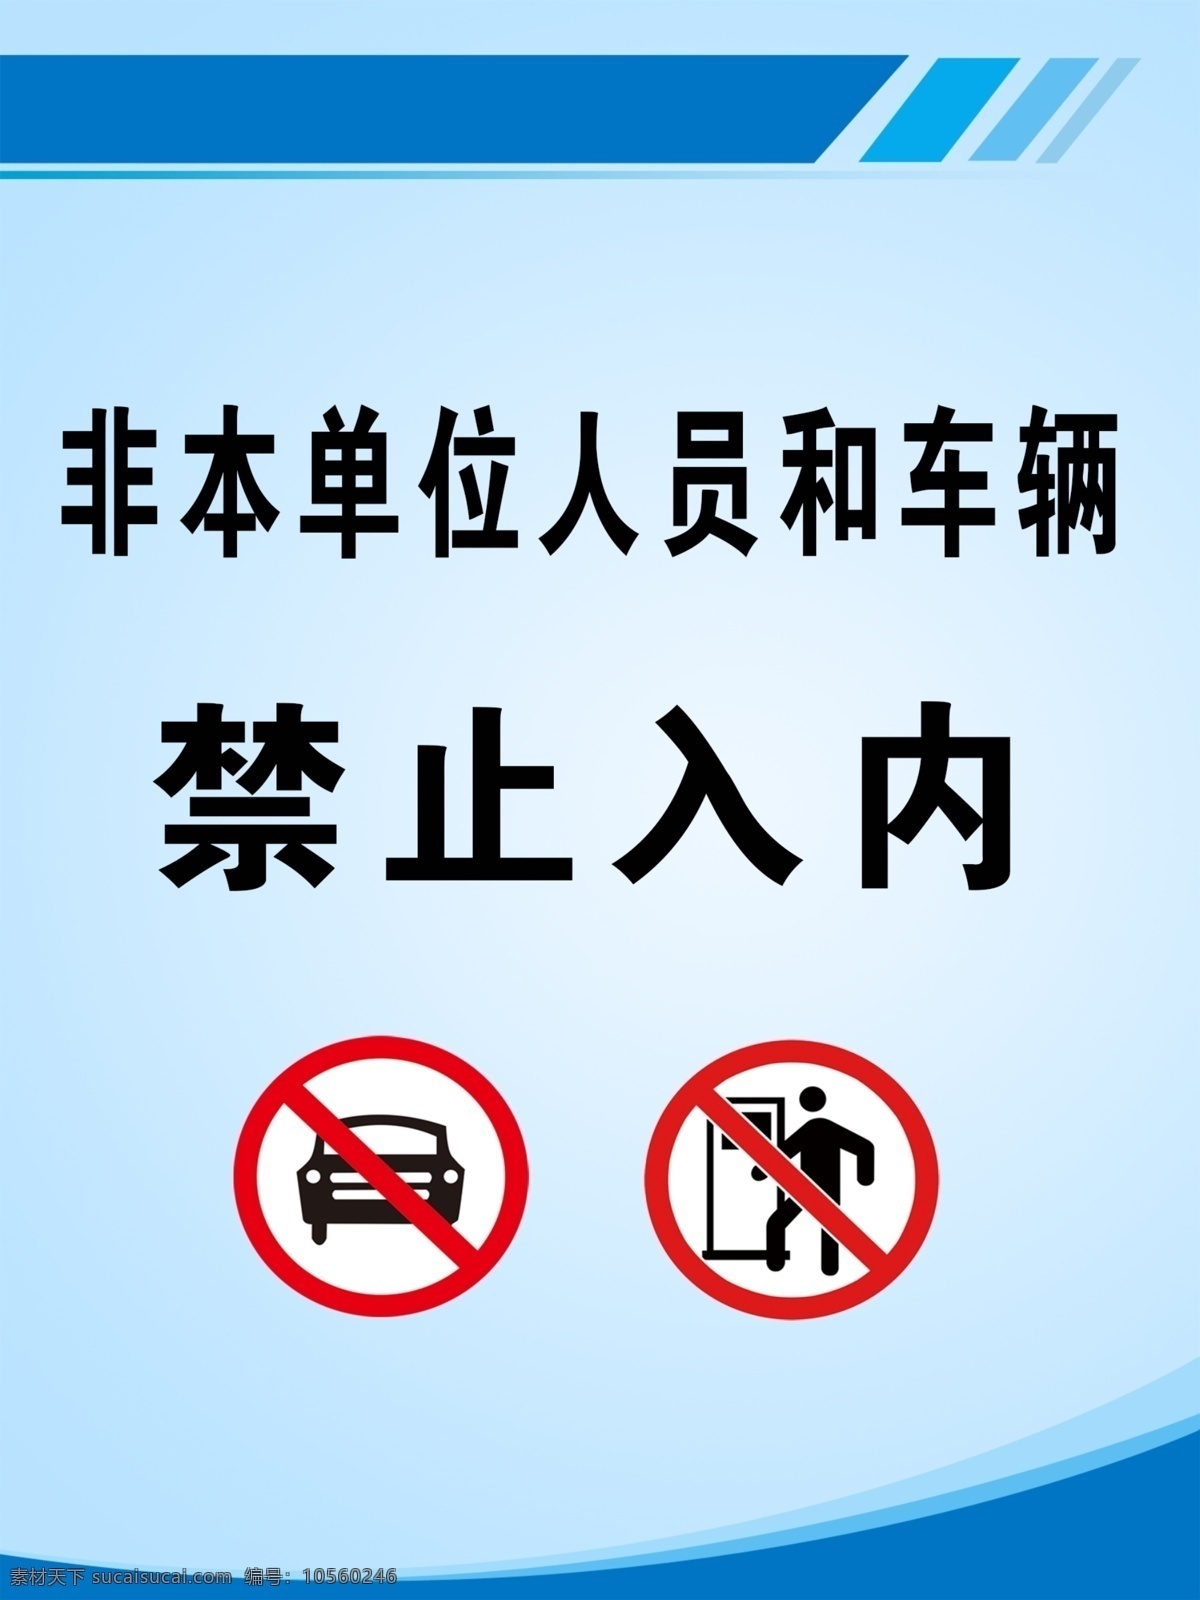 禁止入内图片 禁止车辆入内 单位 车辆 文化艺术